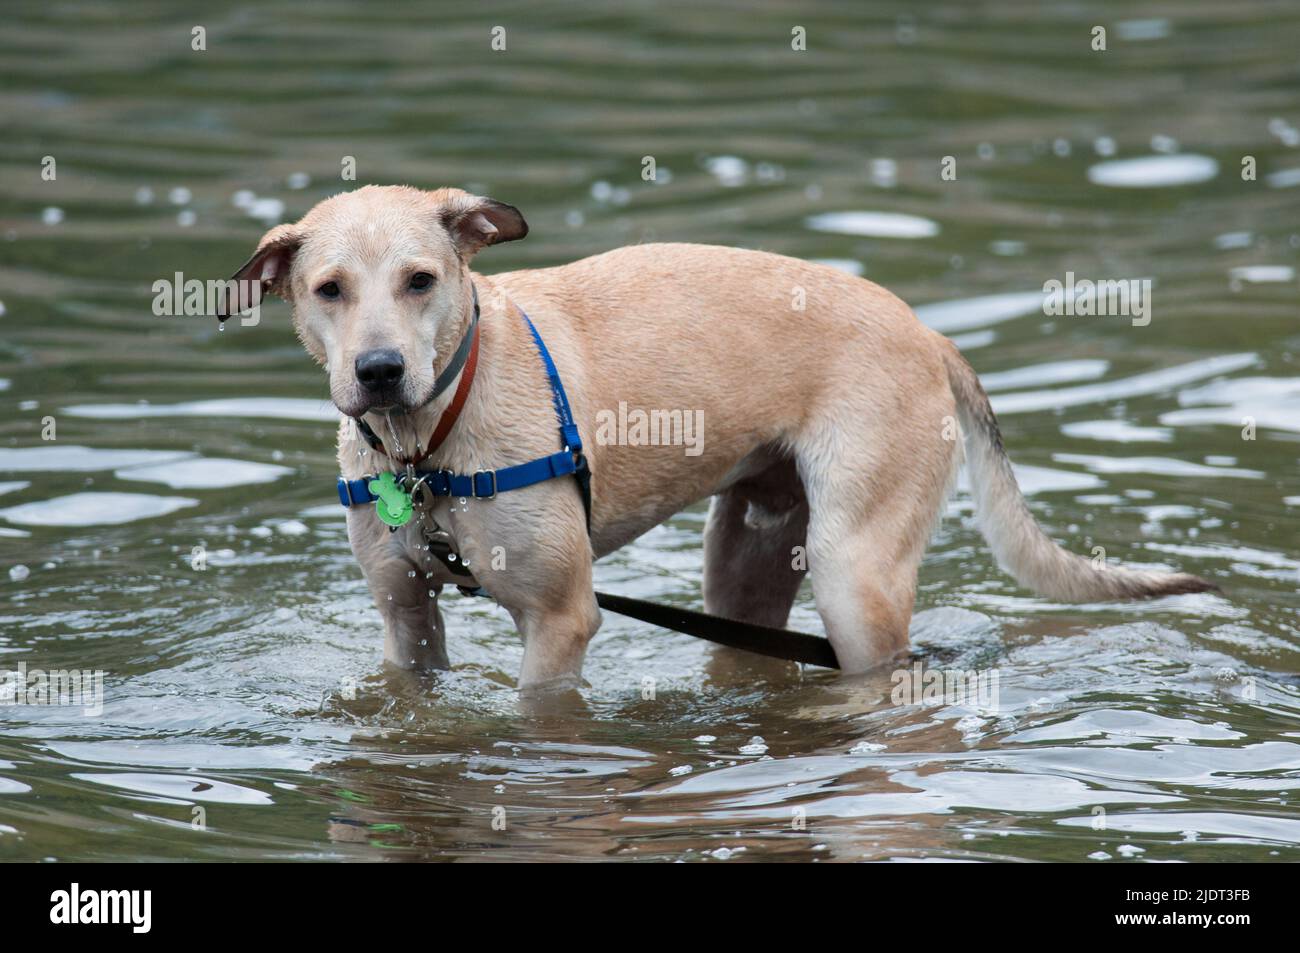 Joven perro bronceado jugando en el agua Foto de stock